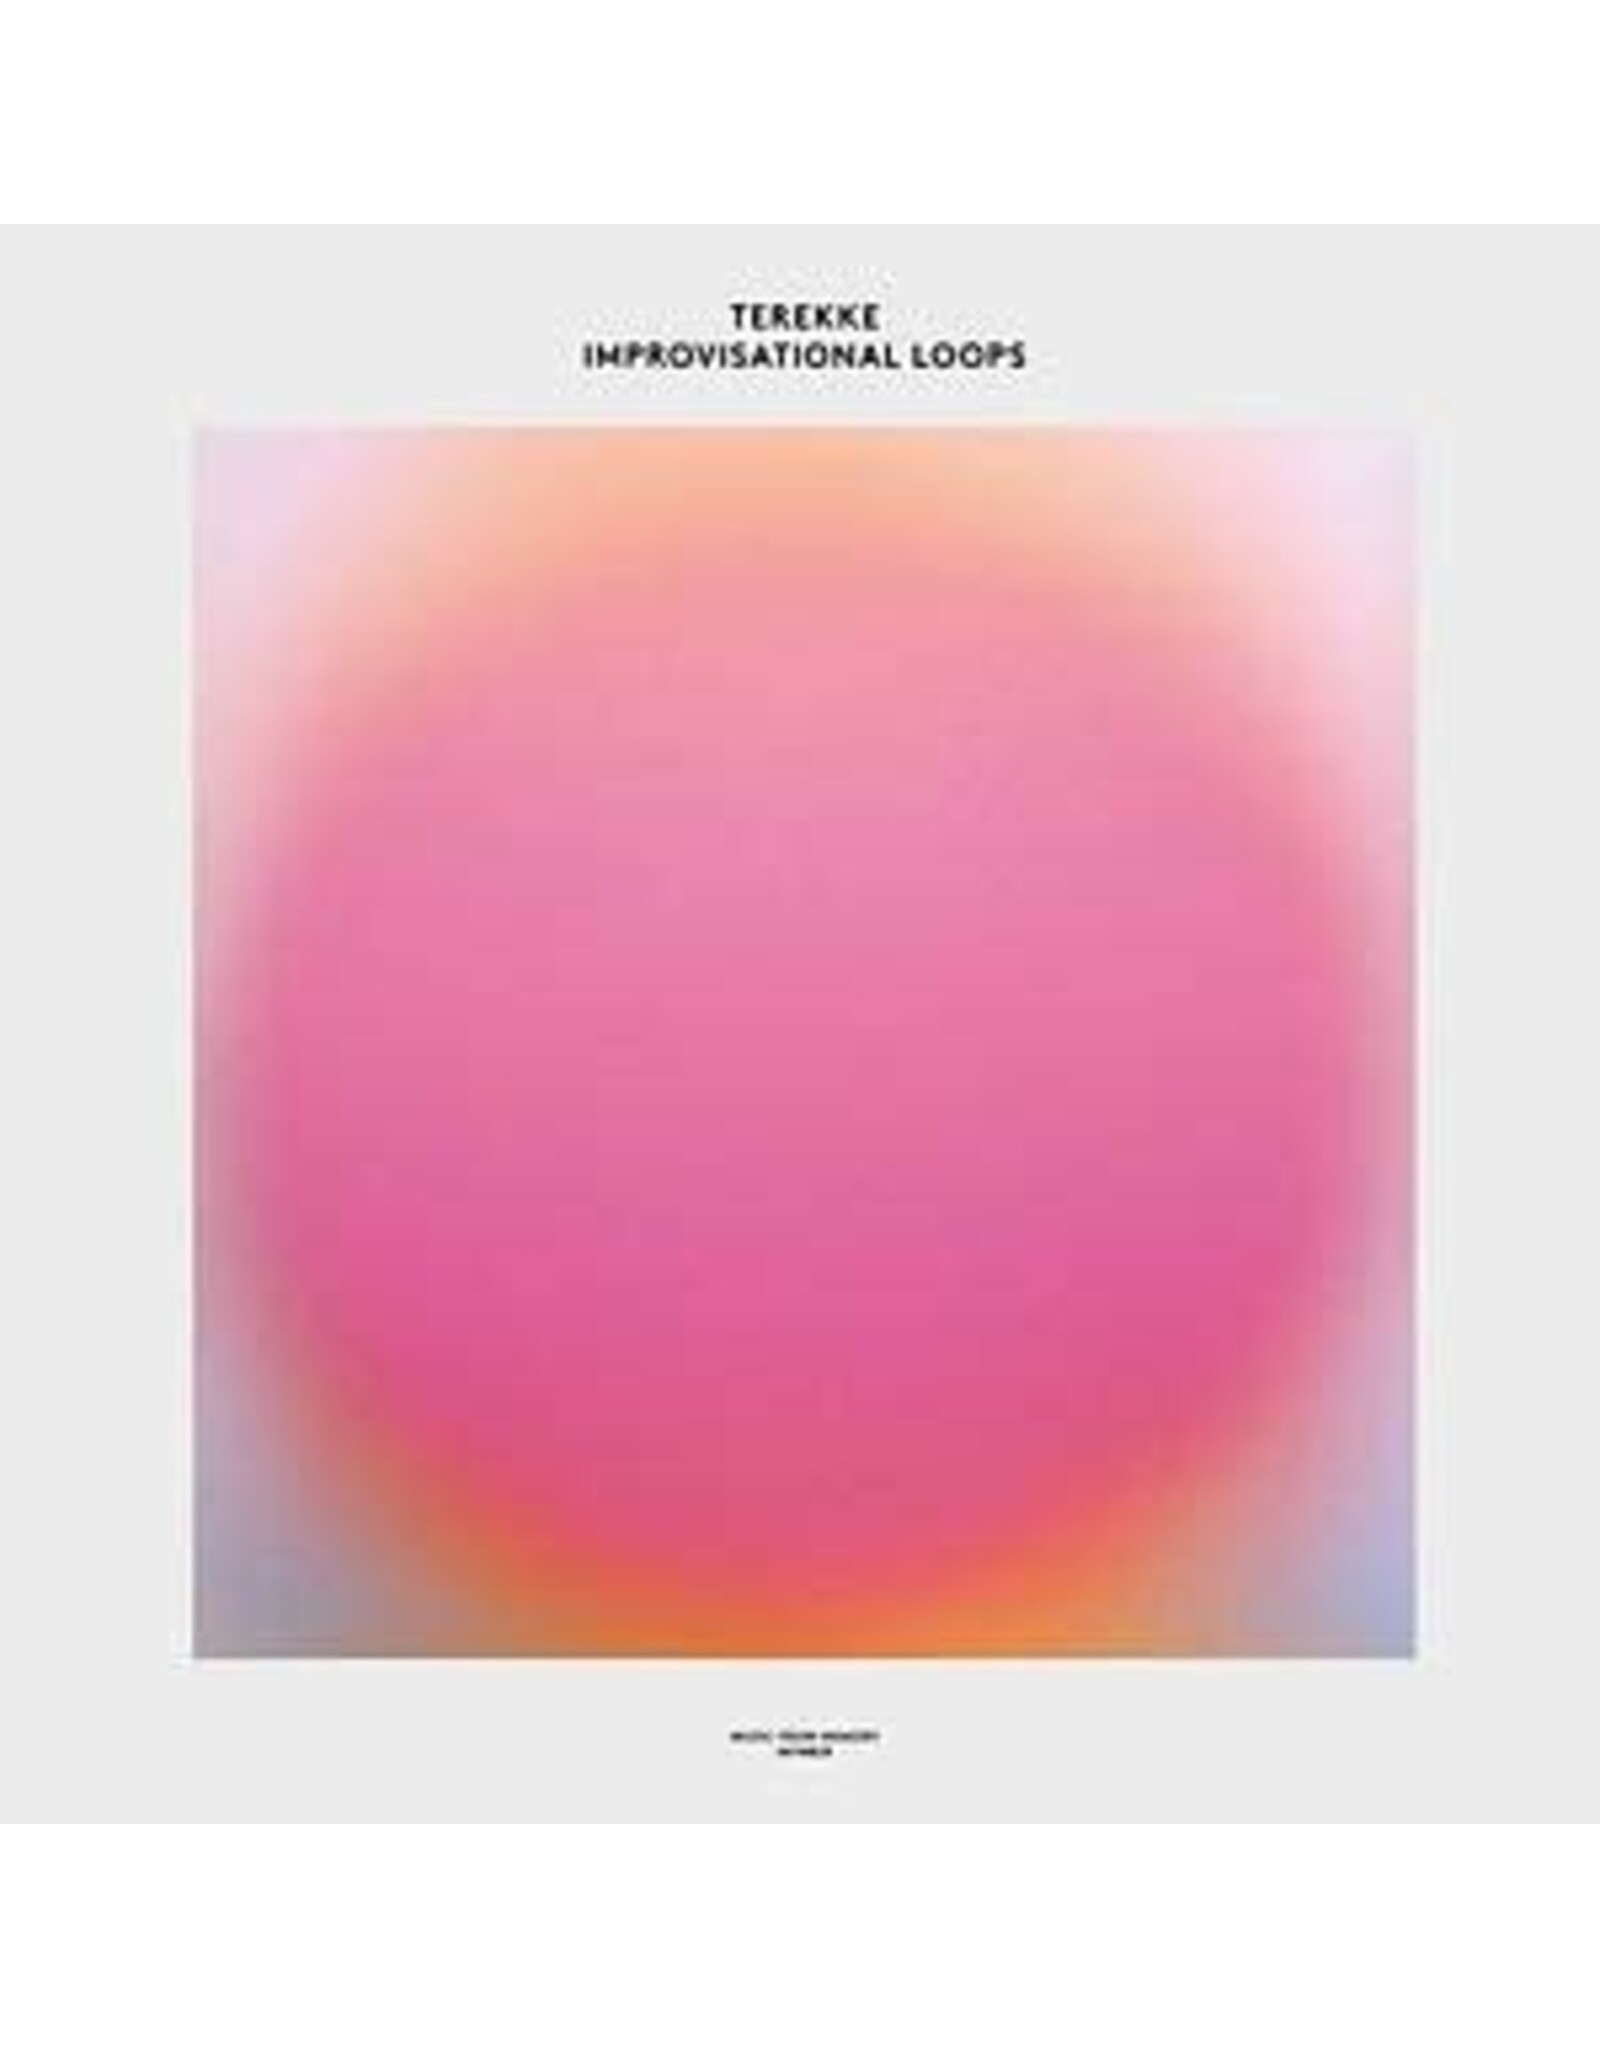 Music From Memory Terekke: Improvisational Loops LP